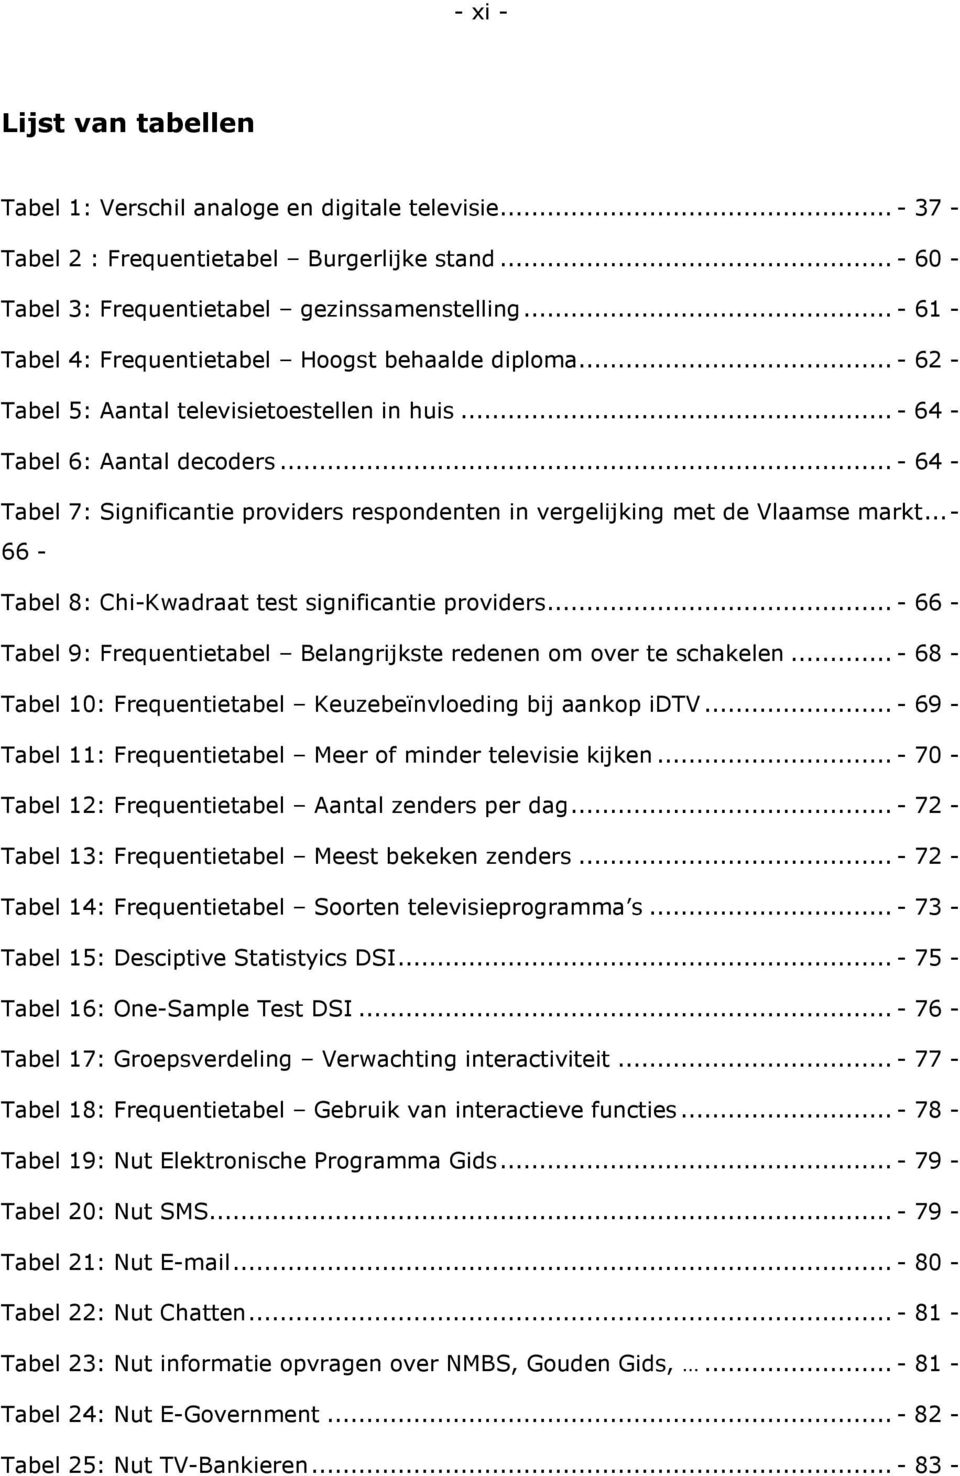 .. - 64 - Tabel 7: Significantie providers respondenten in vergelijking met de Vlaamse markt...- 66 - Tabel 8: Chi-Kwadraat test significantie providers.